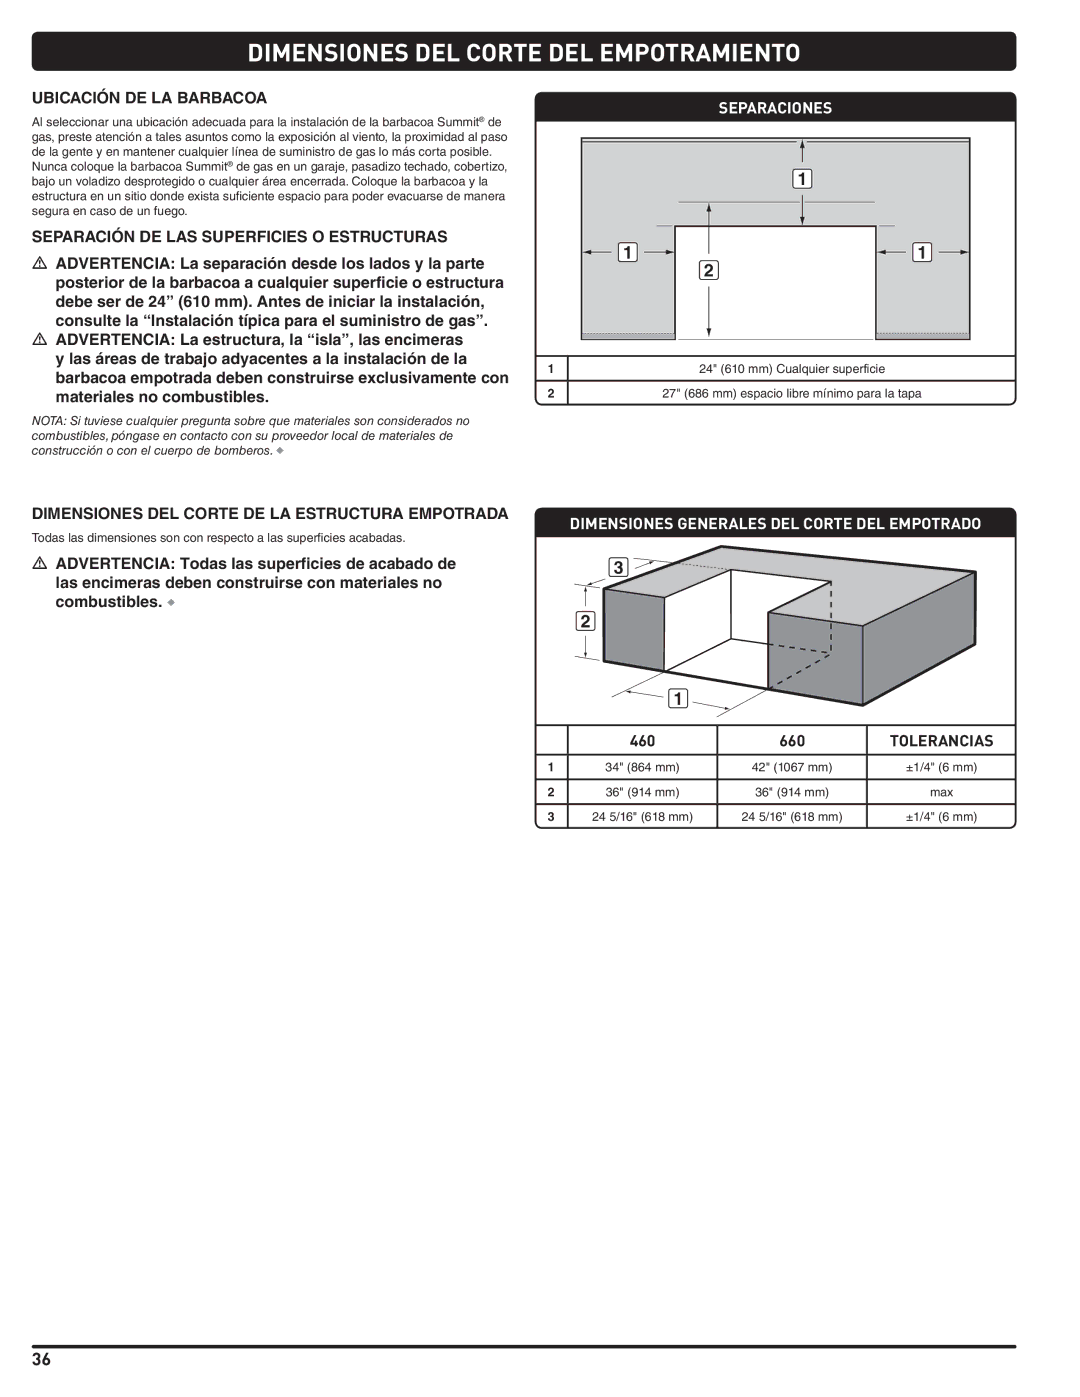 Summit 660-LP, 460-LP manual Ubicación DE LA Barbacoa, Separación DE LAS Superficies O Estructuras, Separaciones 